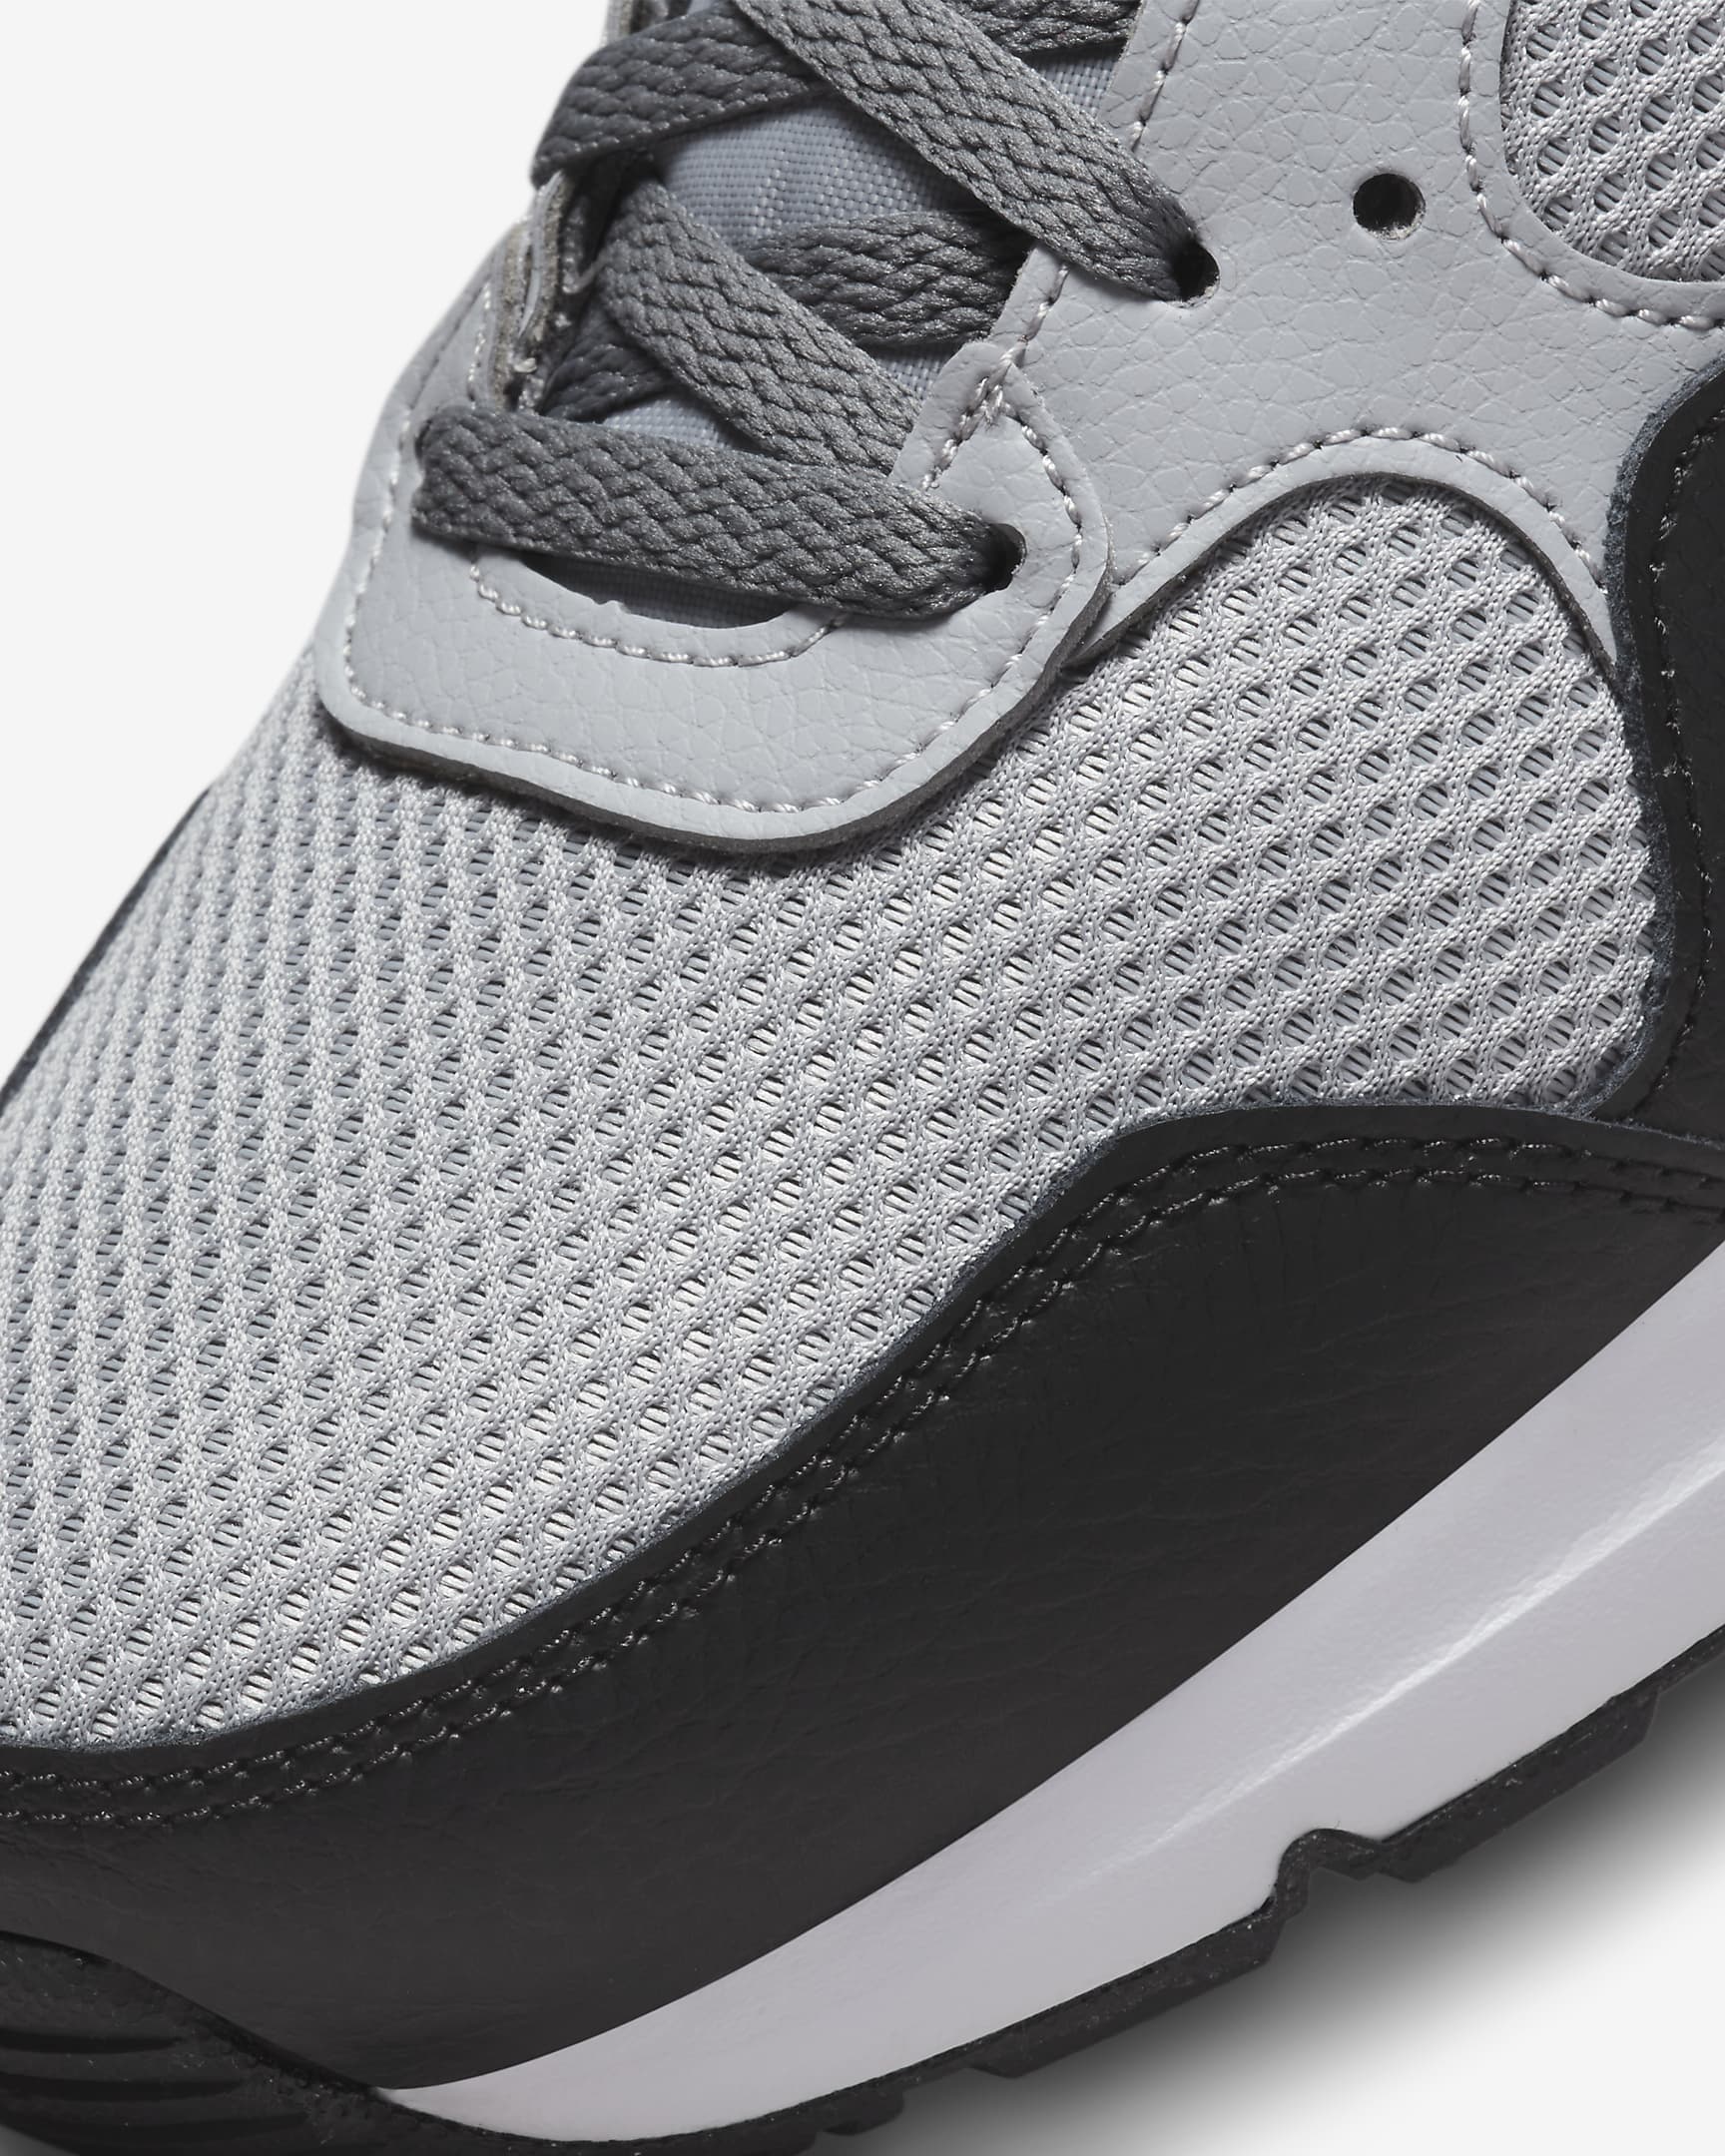 Nike Air Max SC Zapatillas - Hombre - Wolf Grey/Negro/Cool Grey/Blanco